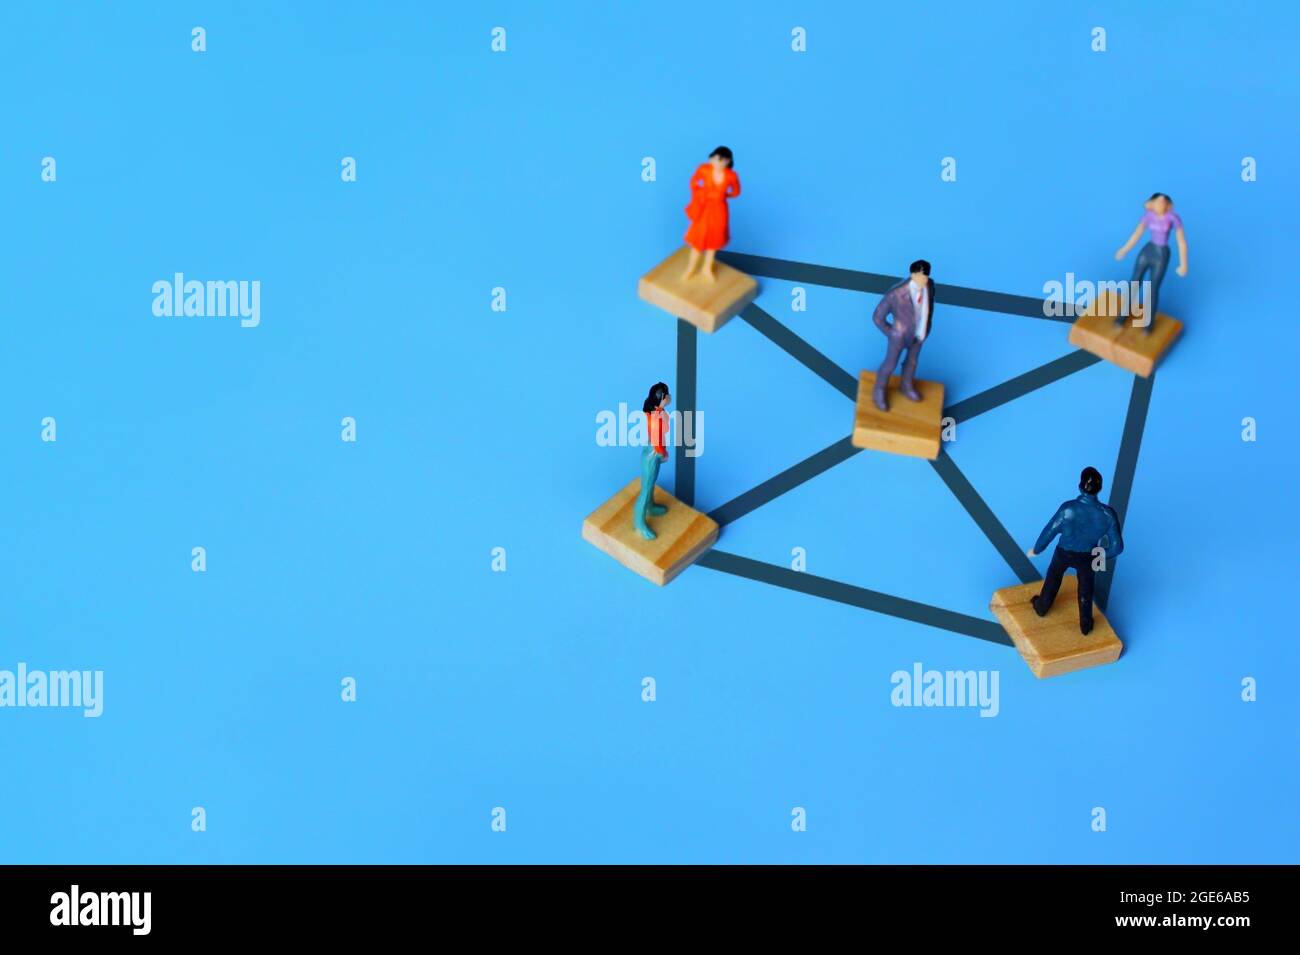 Image de mise au point sélective de personnes miniatures connectées sur des cubes en bois. Concept de connexion, de réseau et de service de réseau social. Copier l'espace pour le texte Banque D'Images